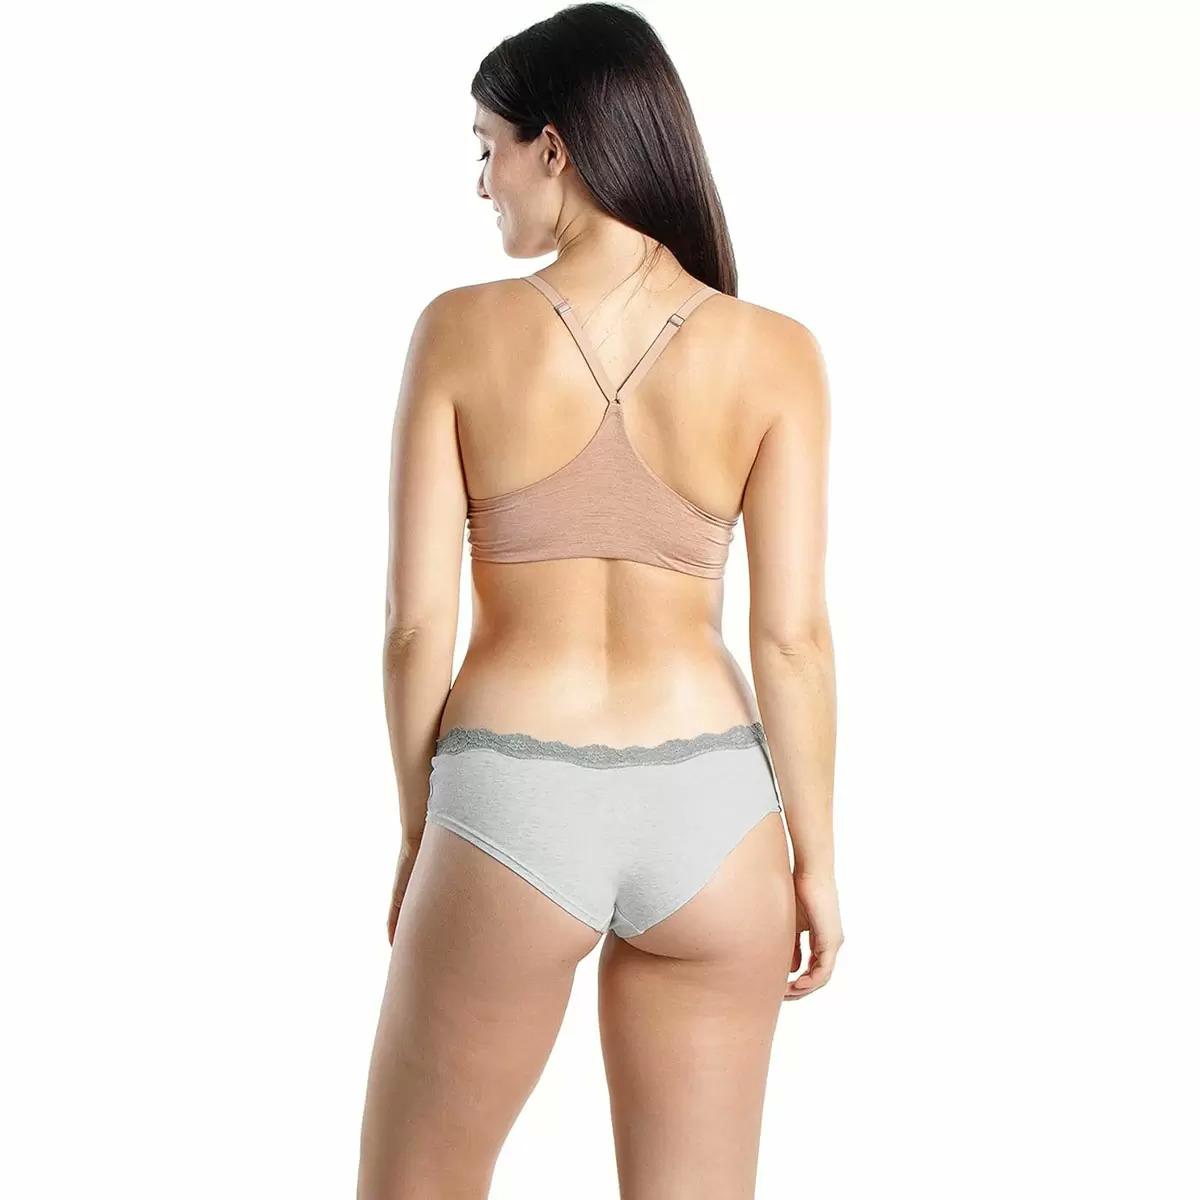 Emprella Cotton Underwear for Women 5 Pack for $9.99